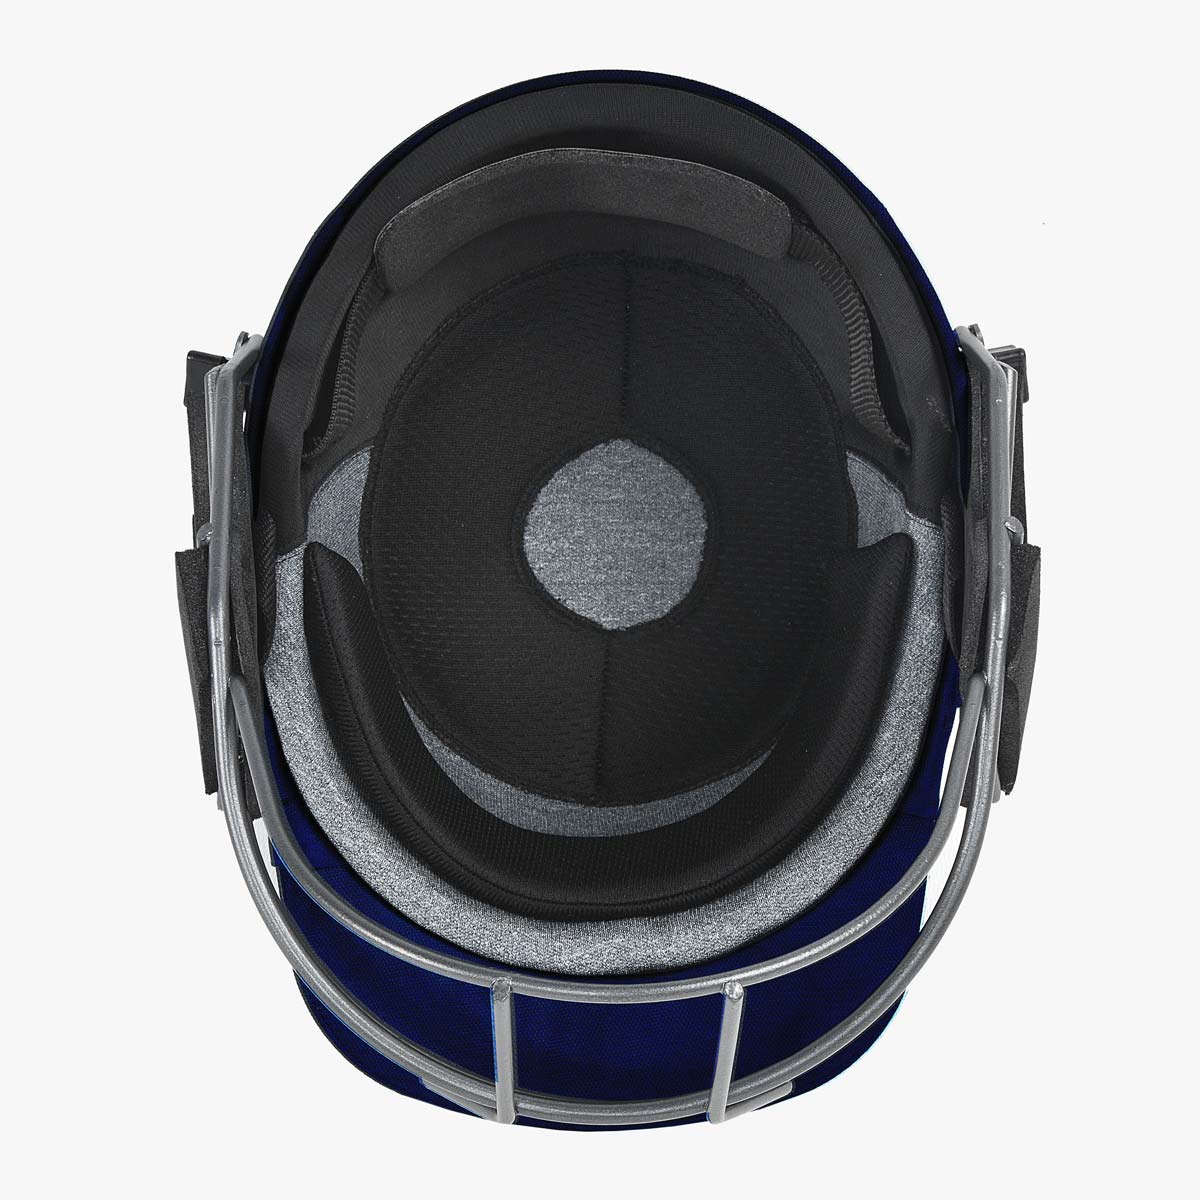 DSC Fort 44 Cricket Helmet